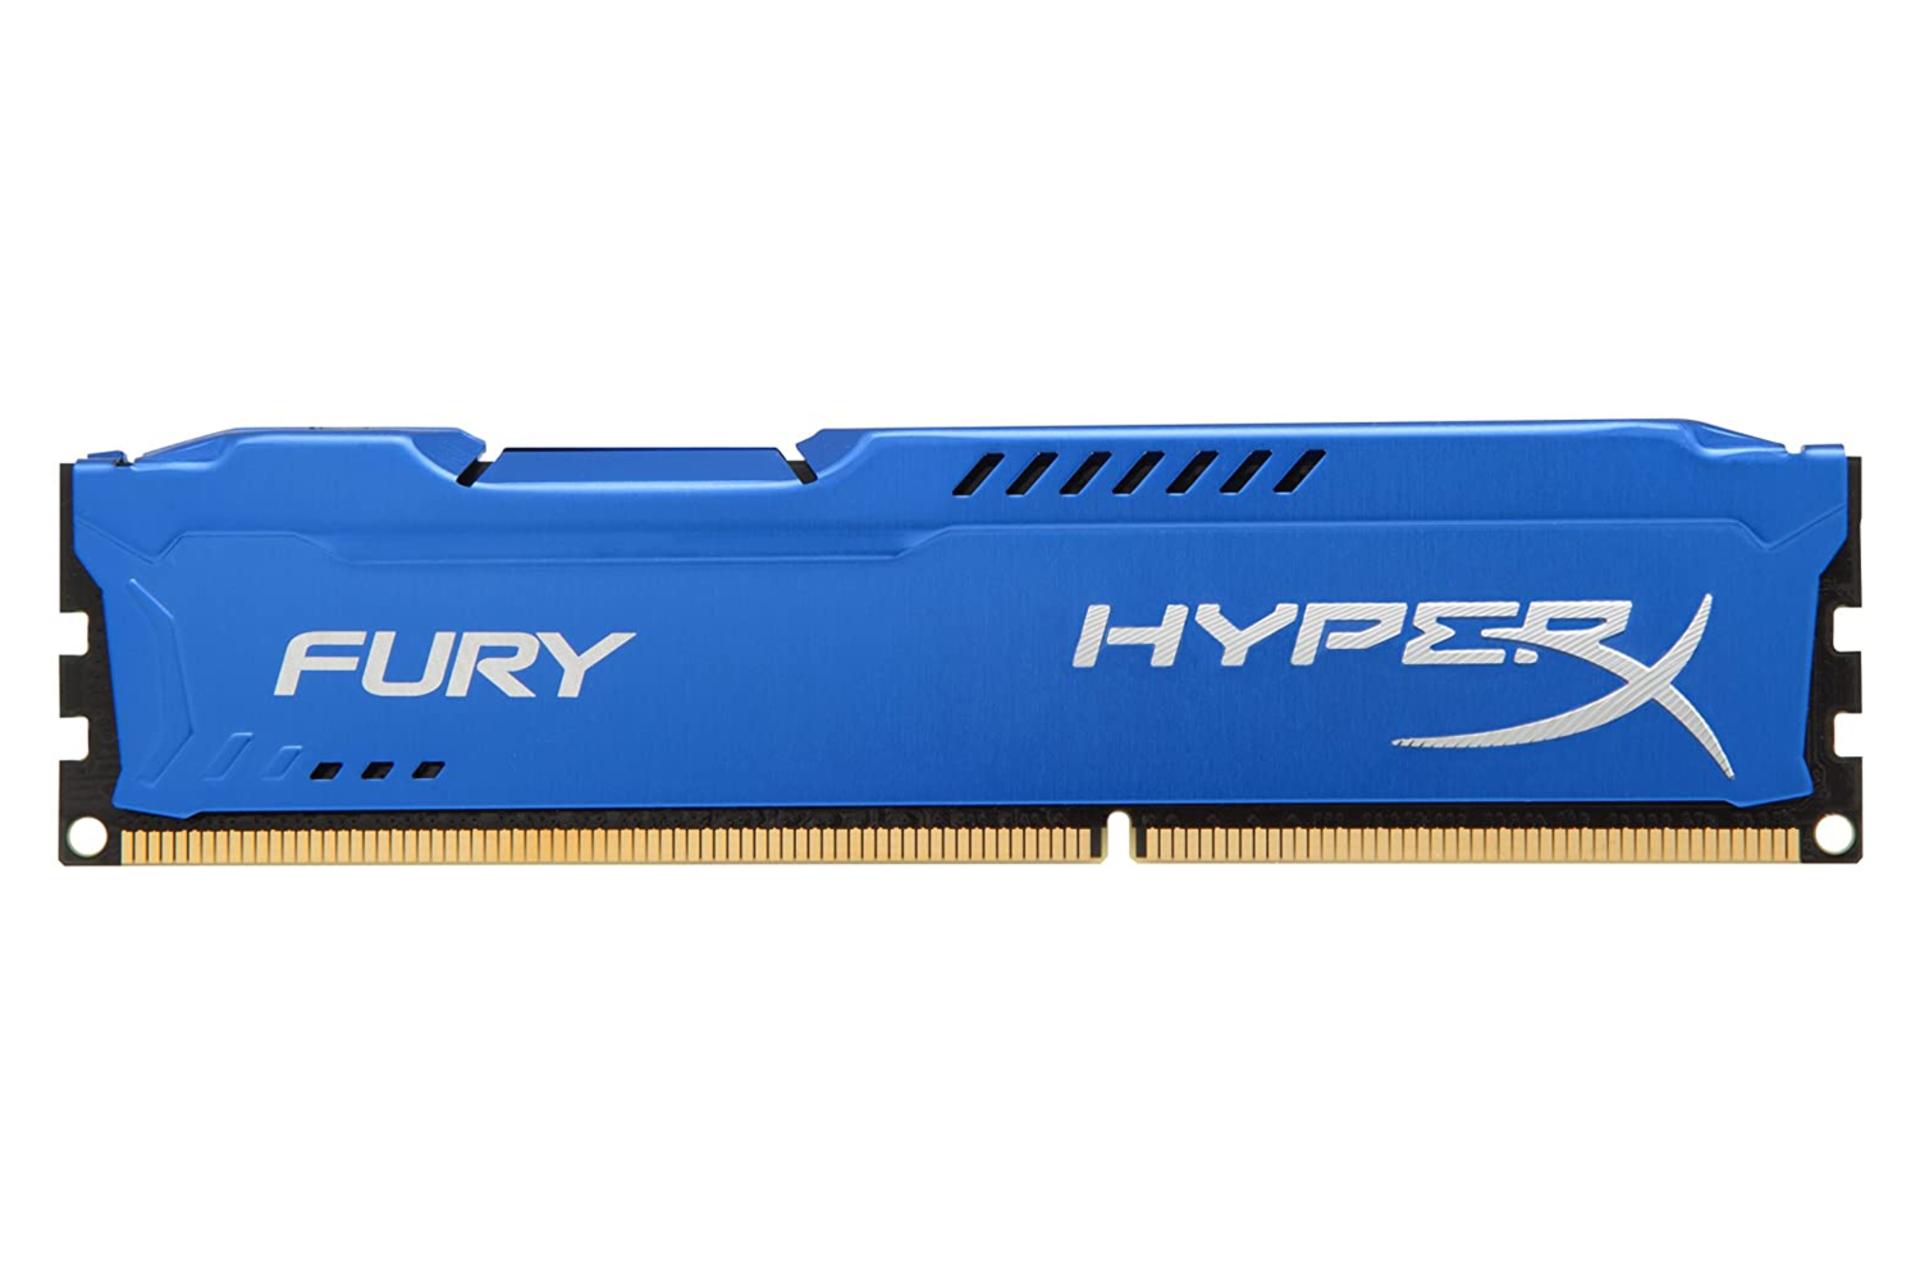 مرجع متخصصين ايران حافظه رم هايپر ايكس Fury ظرفيت 4 گيگابايت از نوع DDR3-1333 آبي